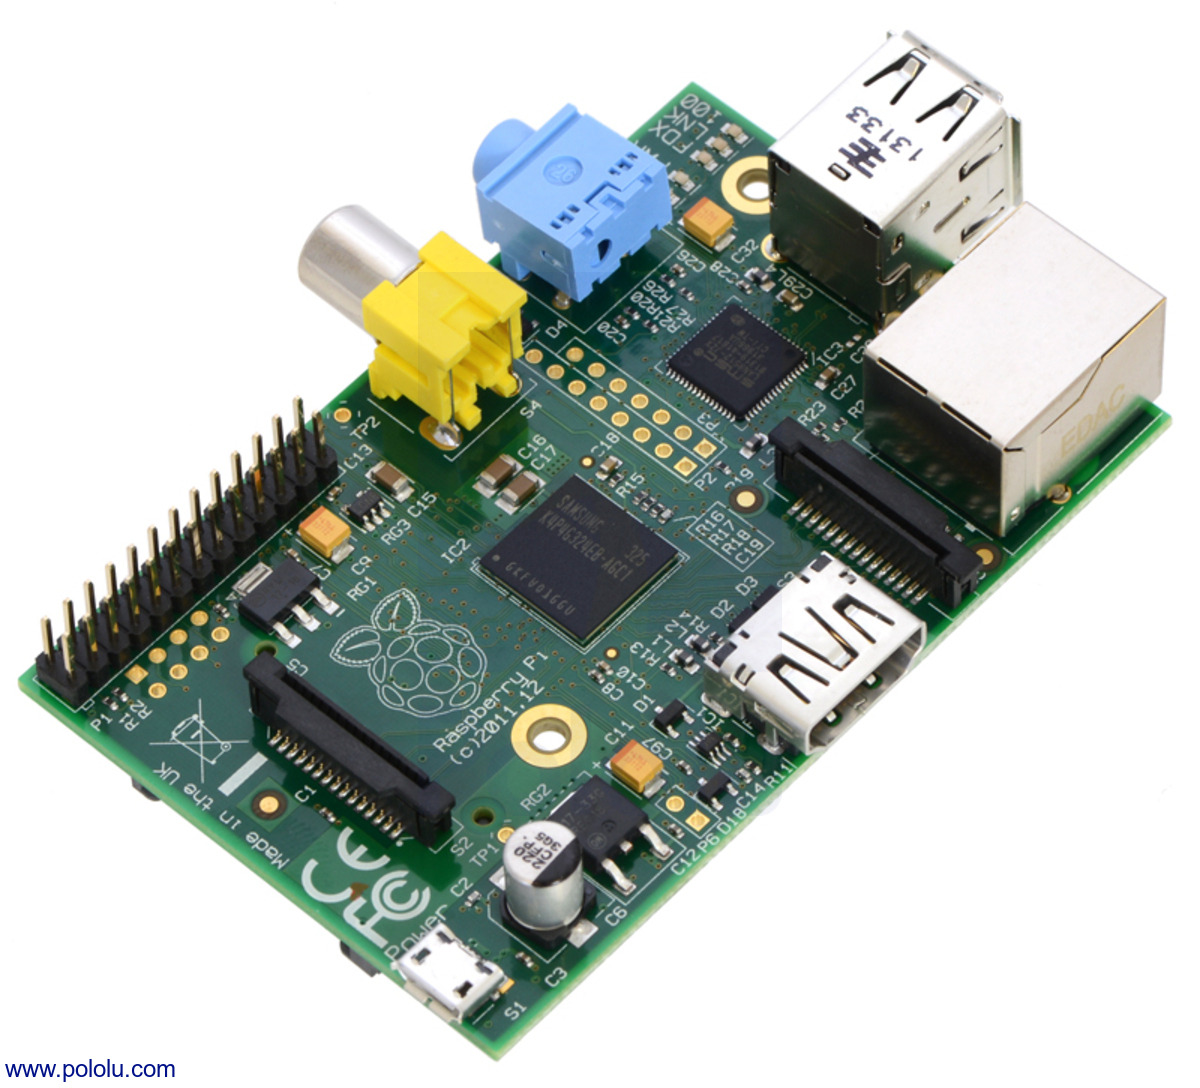 Pololu Raspberry Pi Model B, Revision 2.0